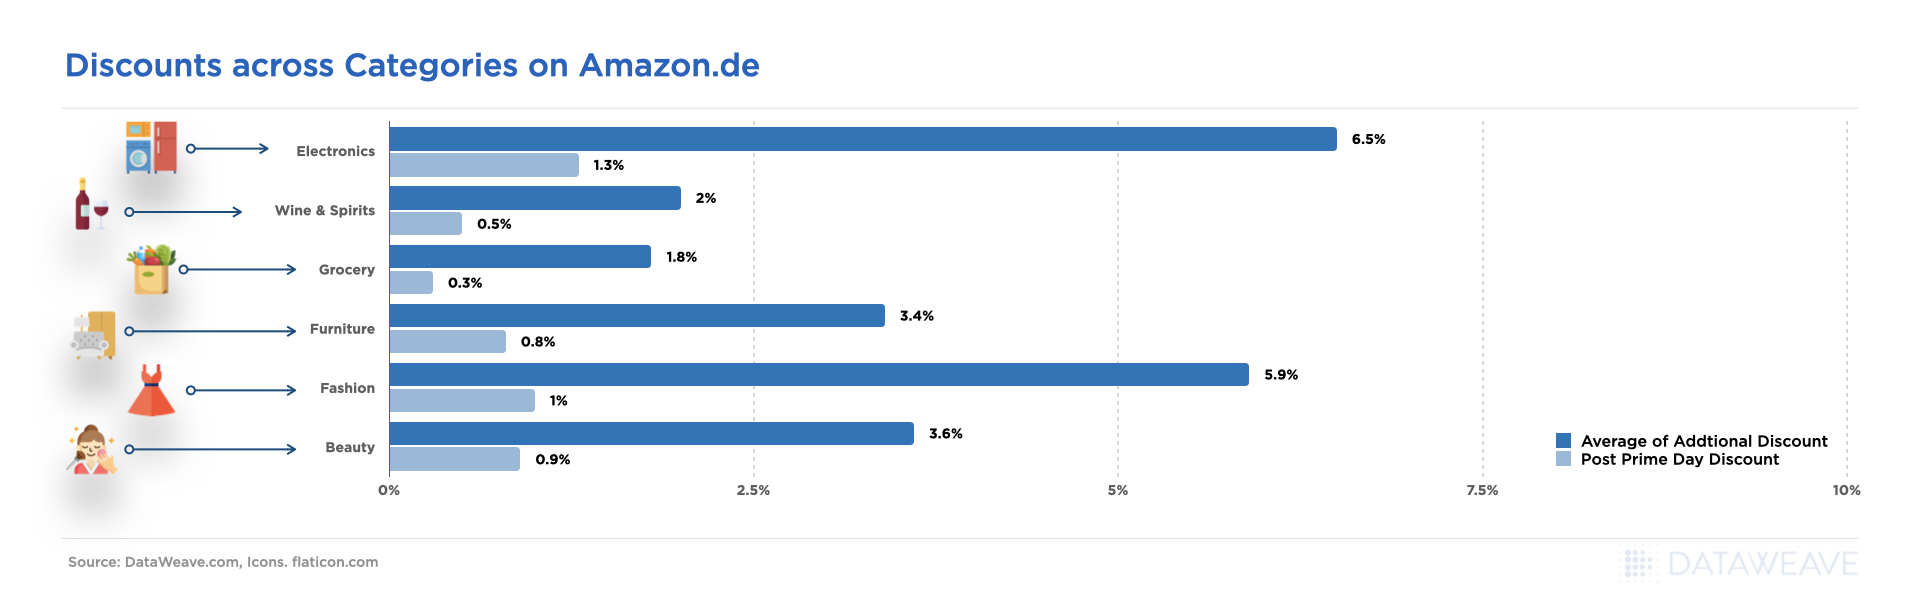 Discounts across Categories on Amazon.de